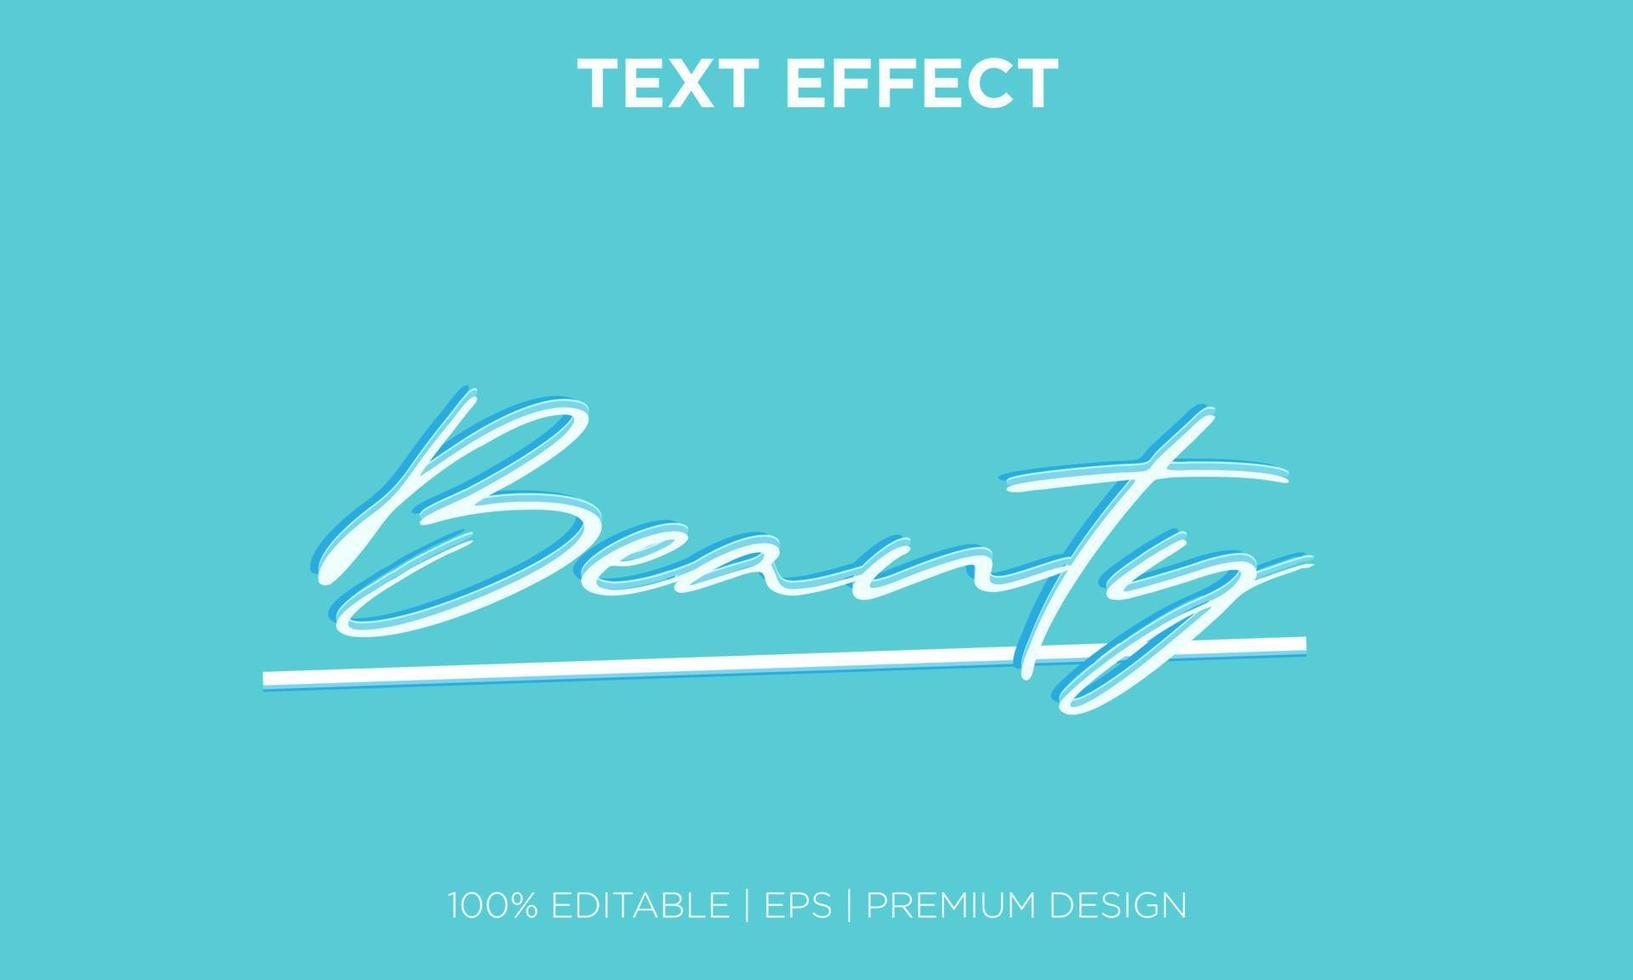 editable text effect style beauty vector